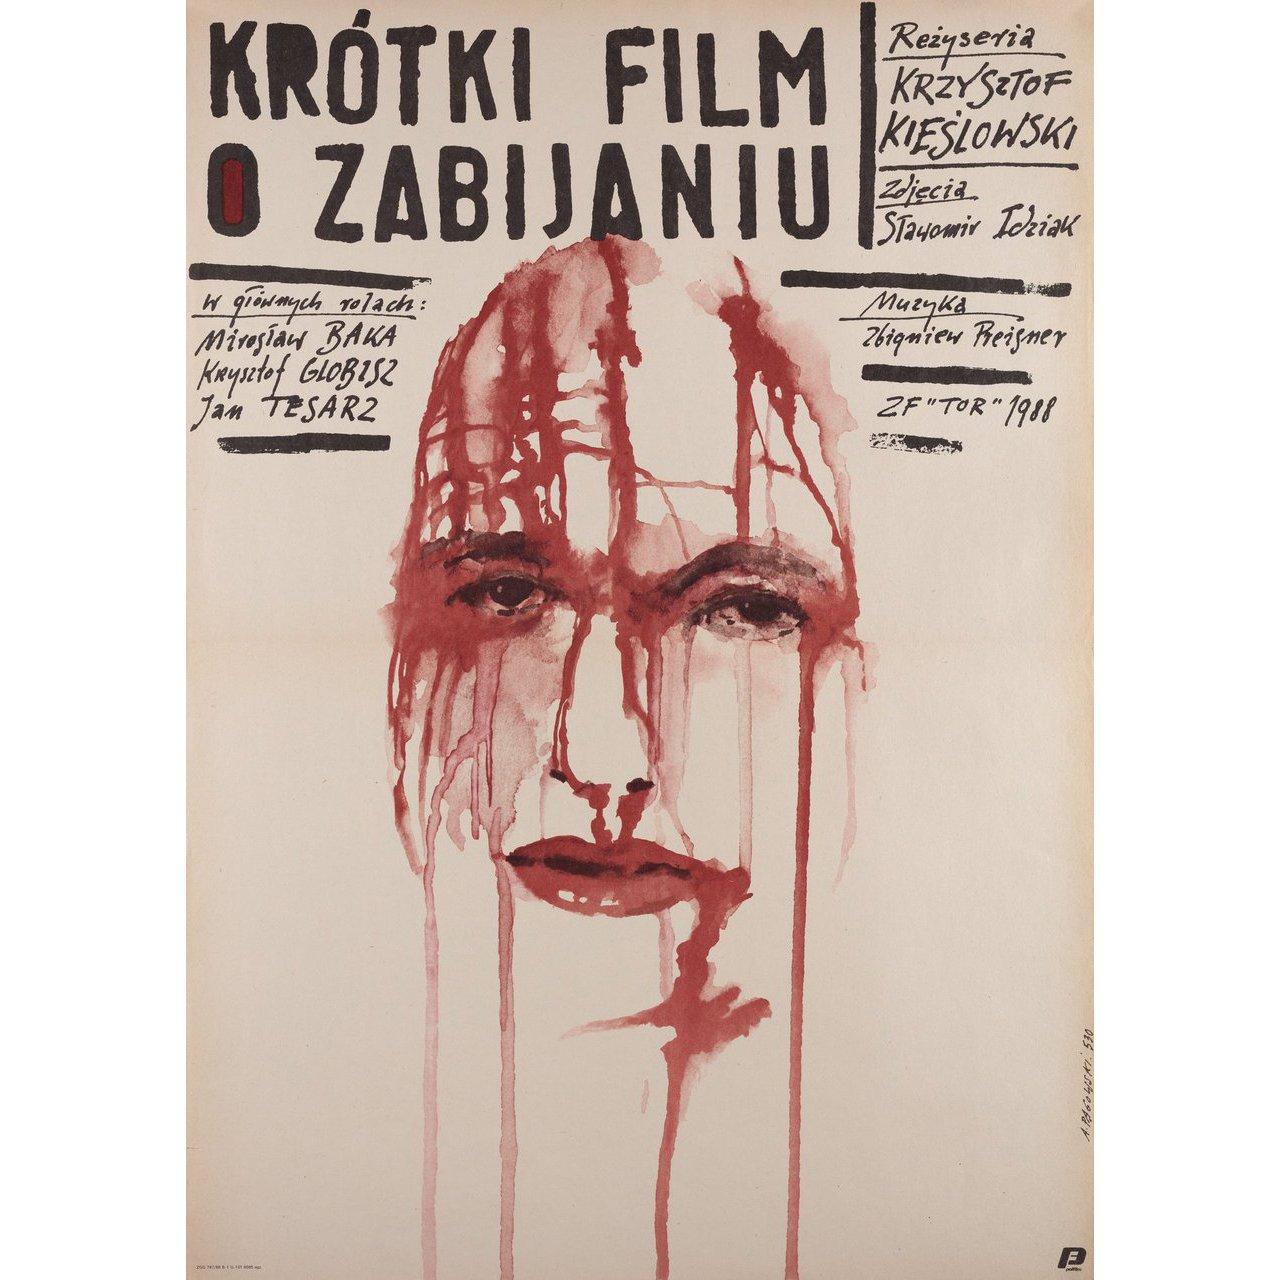 Original 1988 Polish B1 poster by Andrzej Pagowski for the film A Short Film About Killing (Krotki film o zabijaniu) directed by Krzysztof Kieslowski with Miroslaw Baka / Krzysztof Globisz / Jan Tesarz / Zbigniew Zapasiewicz. Very Good-Fine